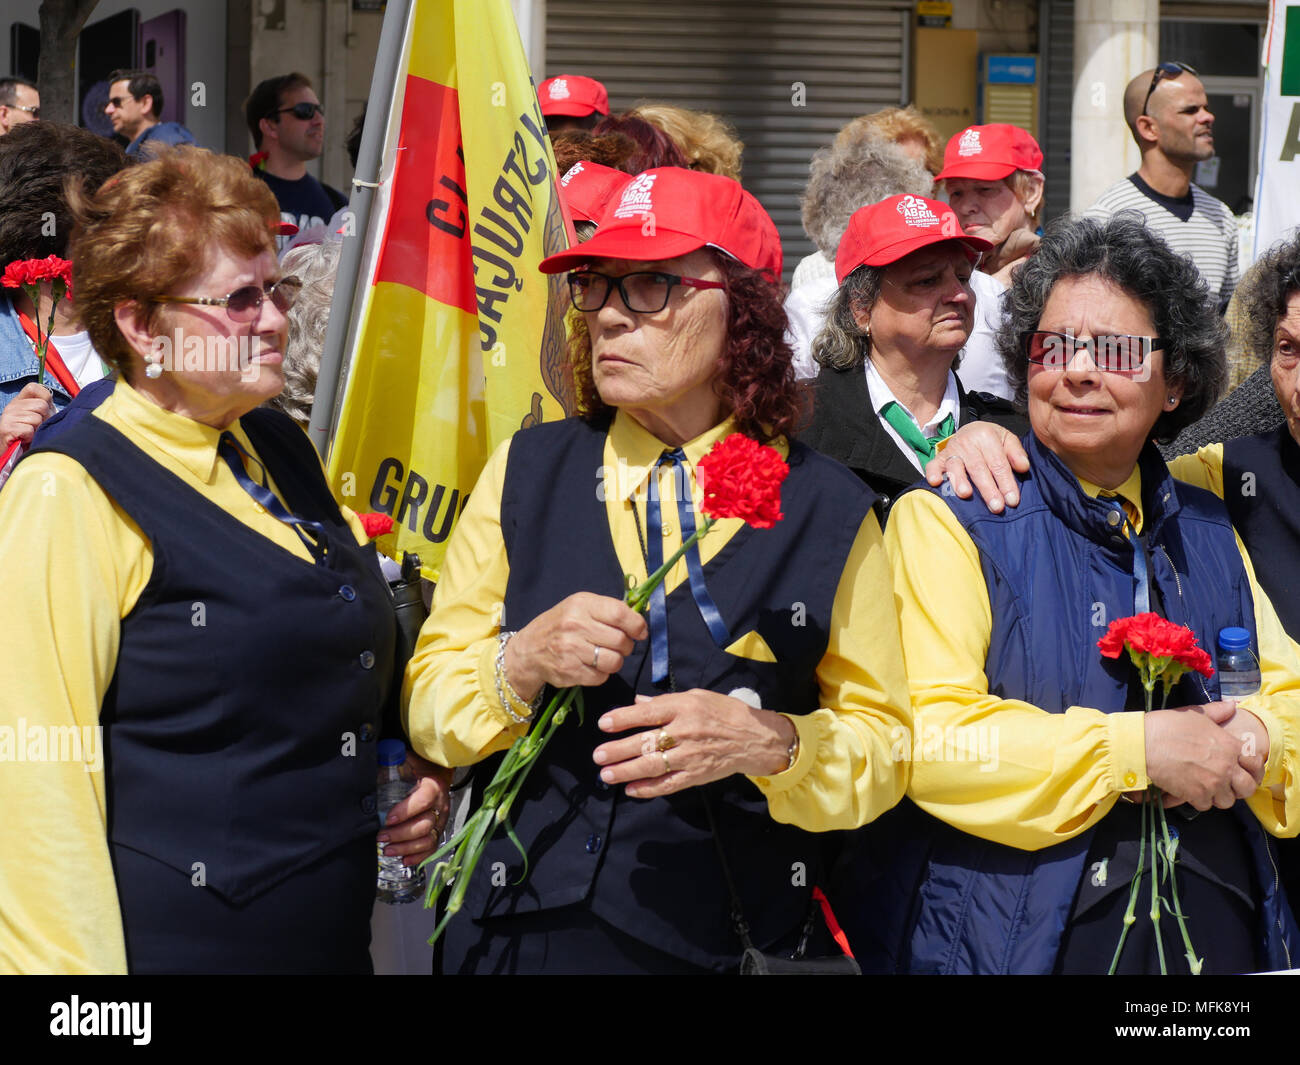 Lisbonne, Portugal, le 25 avril 2018 : les personnes sont considérées dans  les rues du quartier populaire de l'Almada, à Lisbonne (Portugal) que  celles qu'ils prennent part aux célébrations du 44e anniversaire